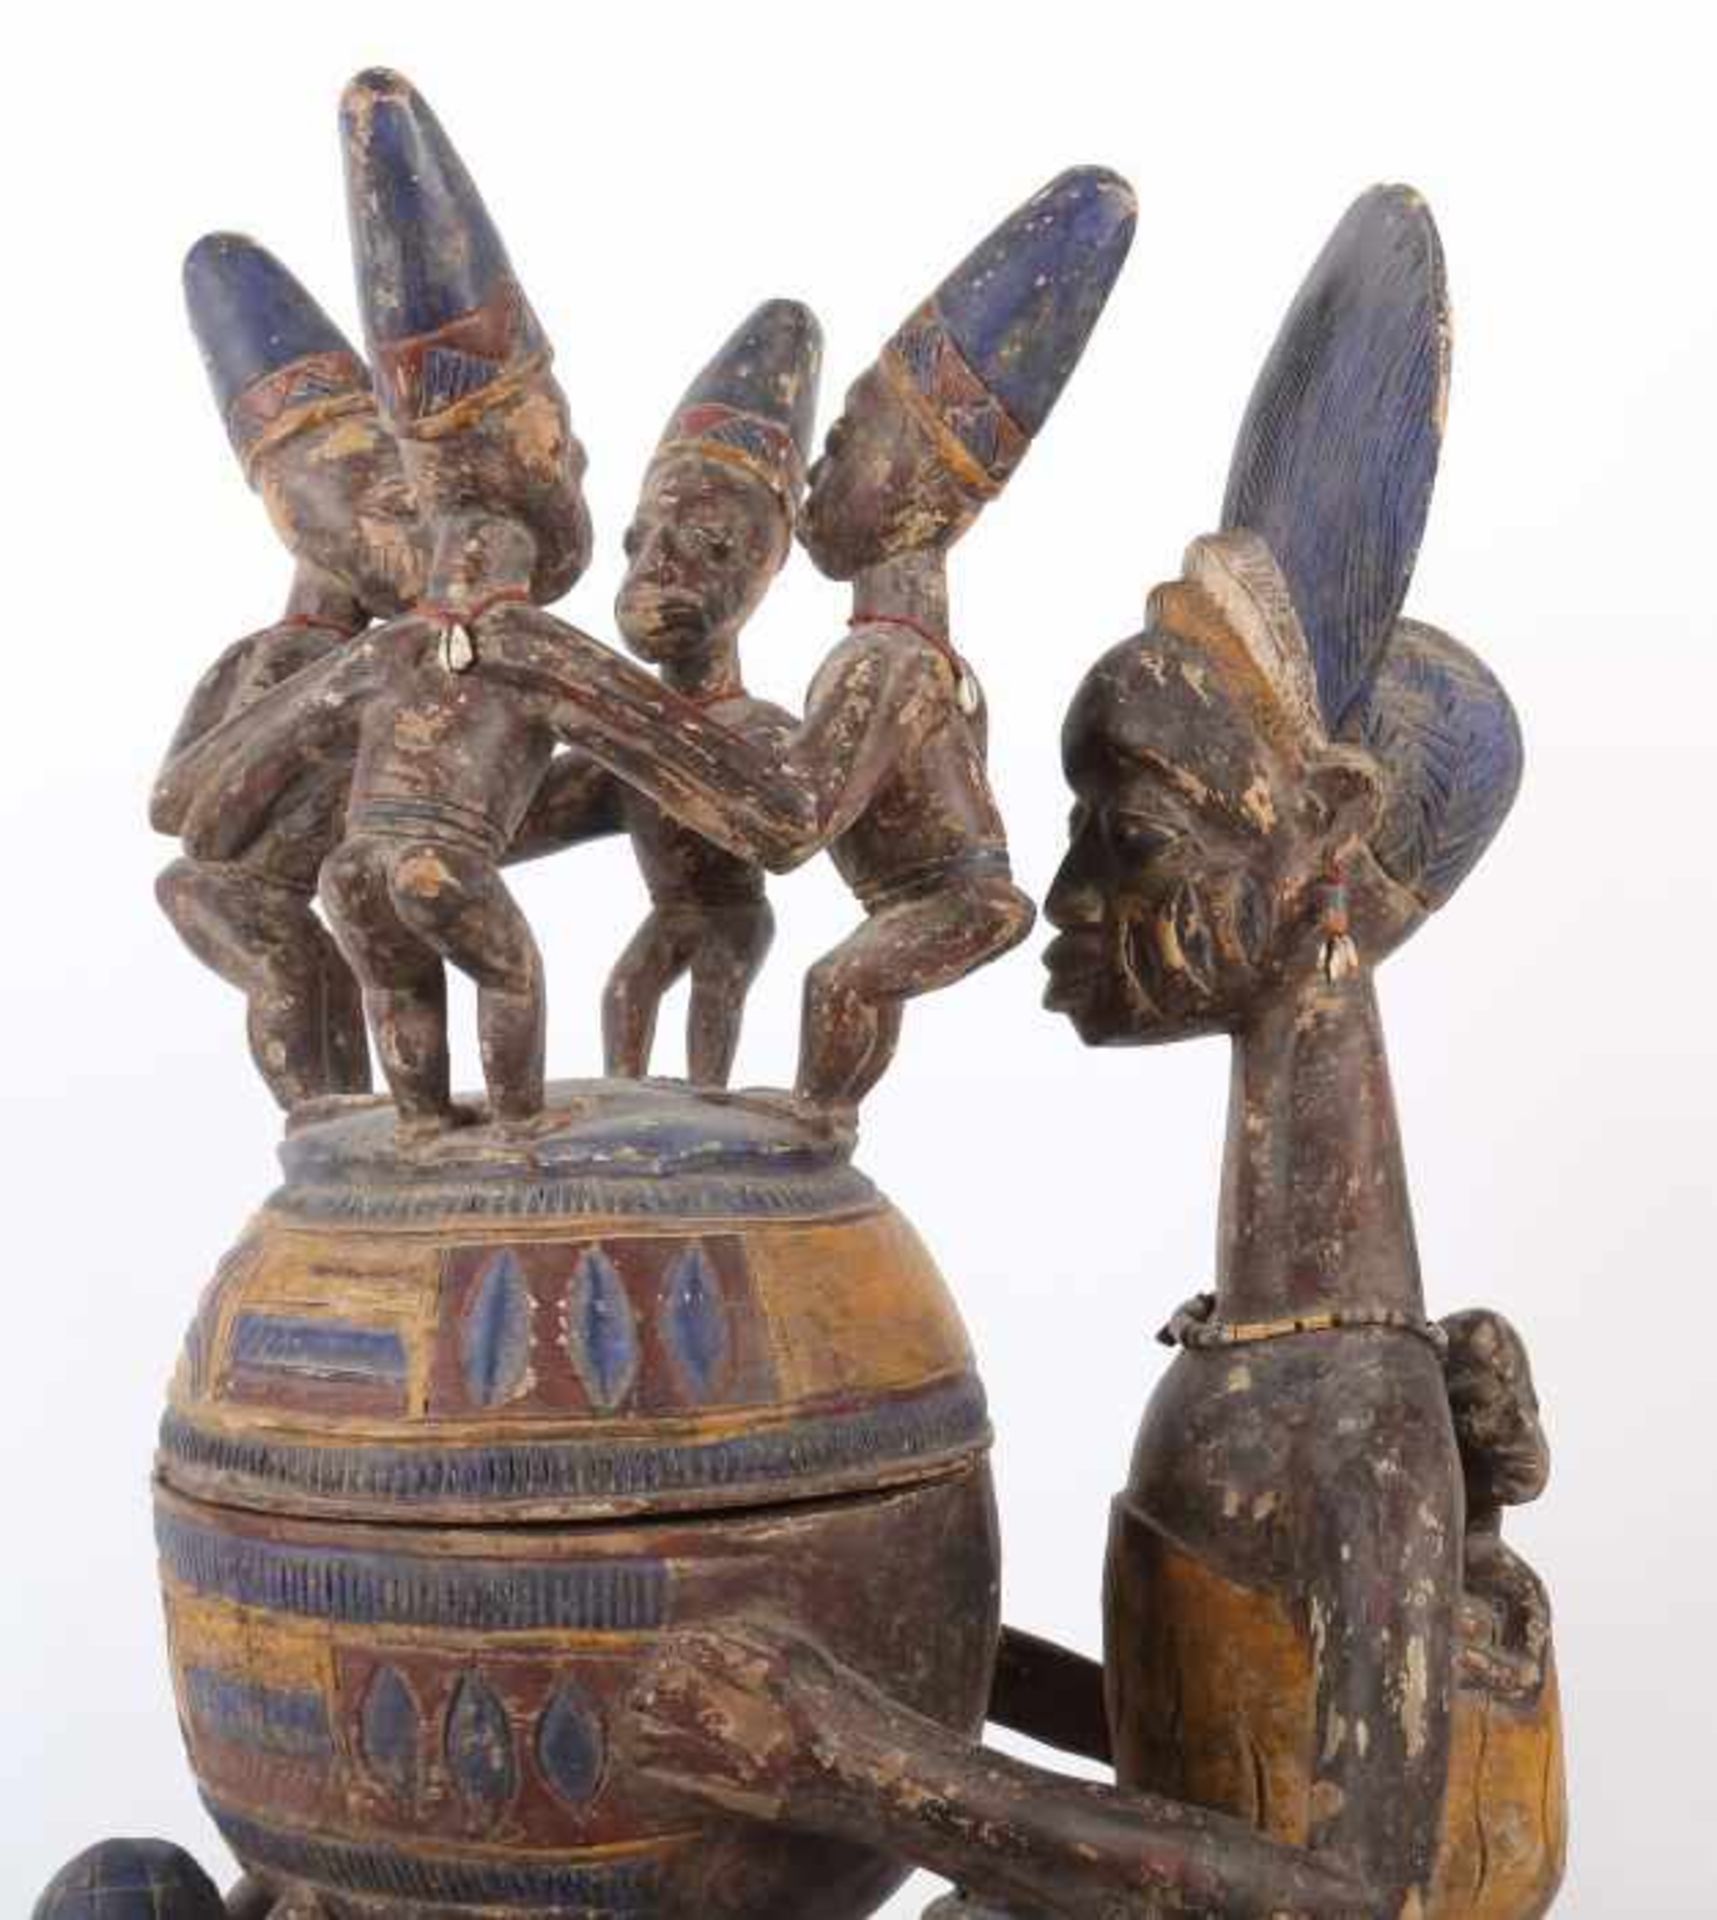 Großes Olumeye-GefäßNigeria, Stamm der Yoruba, 5 Trägerfiguren und 1 große Mutterfigur mit Kind - Image 4 of 10